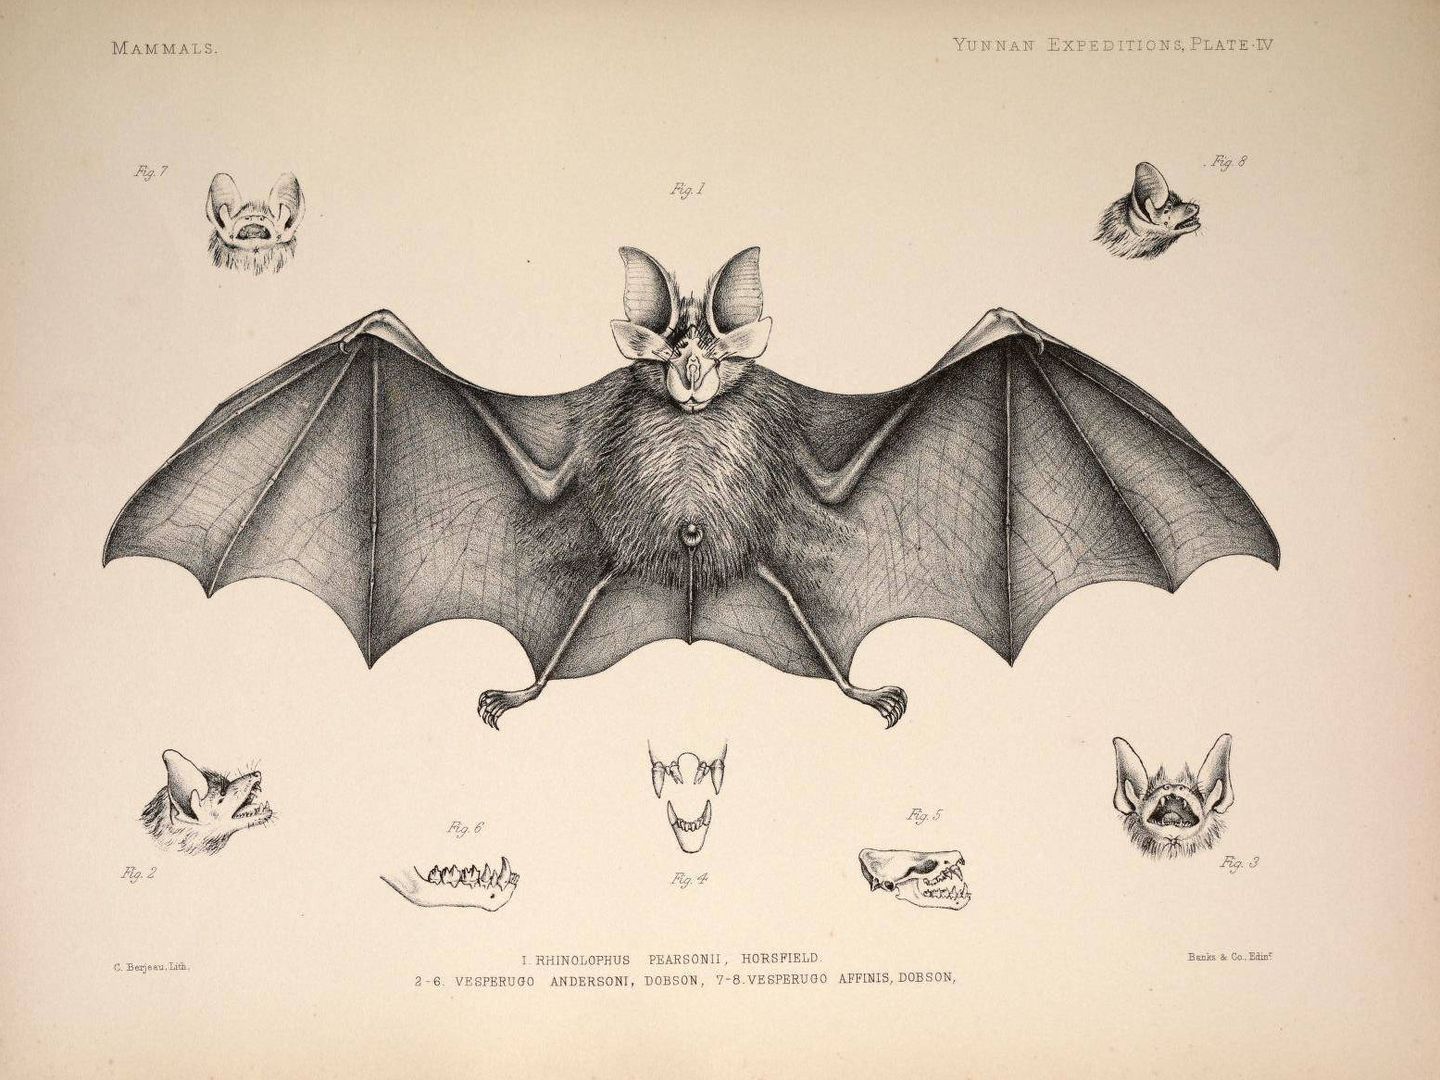 Un dibujo de un Rhinolophus pearsonii de 1878. (Anatomical and Zoological Researches)